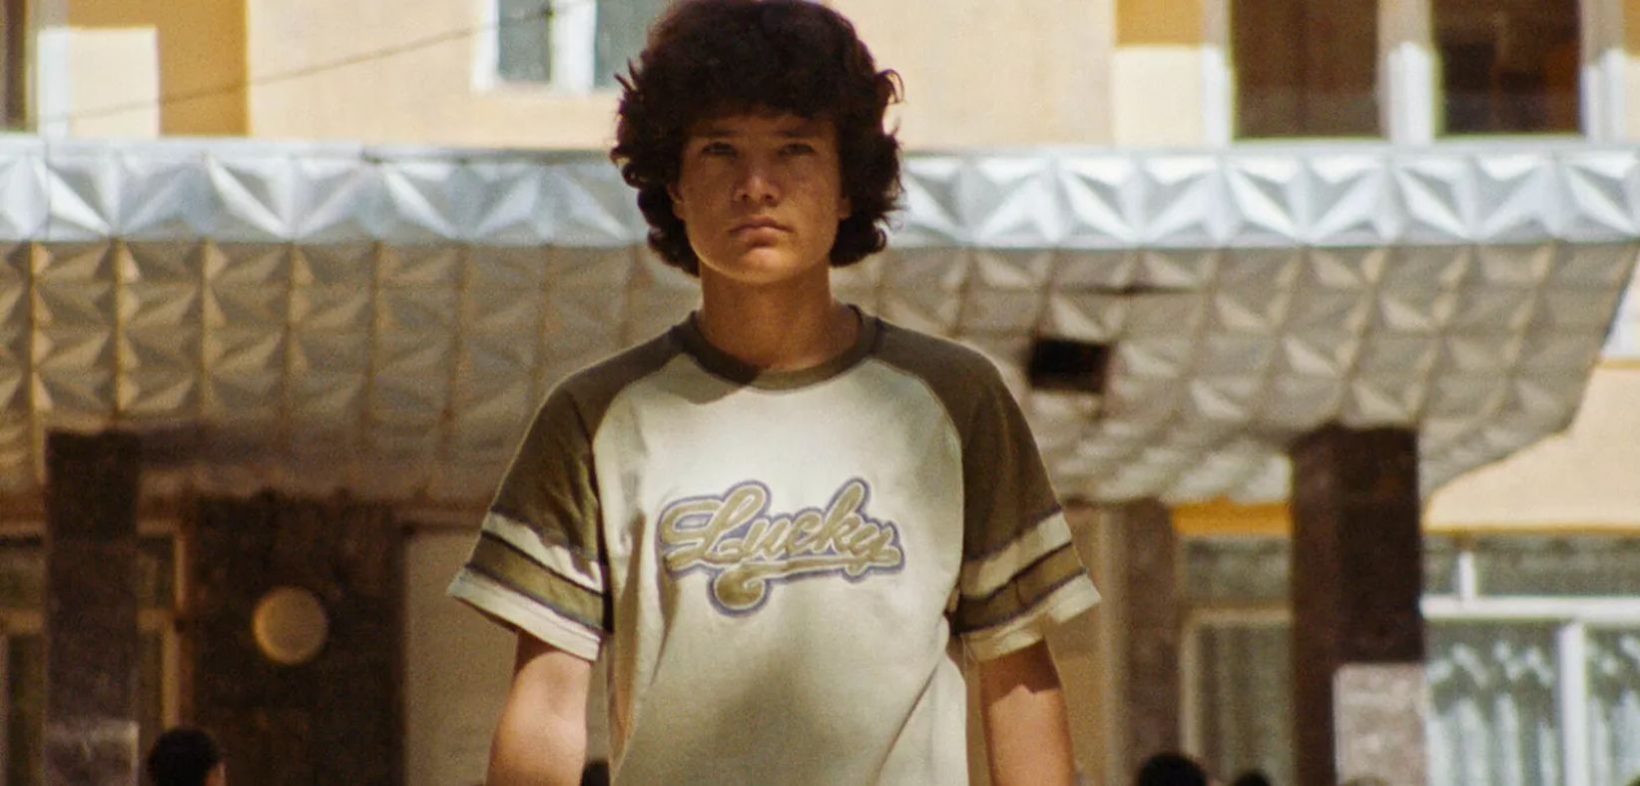 Lockiger Junge im braun-weißen T-Shirt mit der Aufschrift "Lucky" vor Gebäude